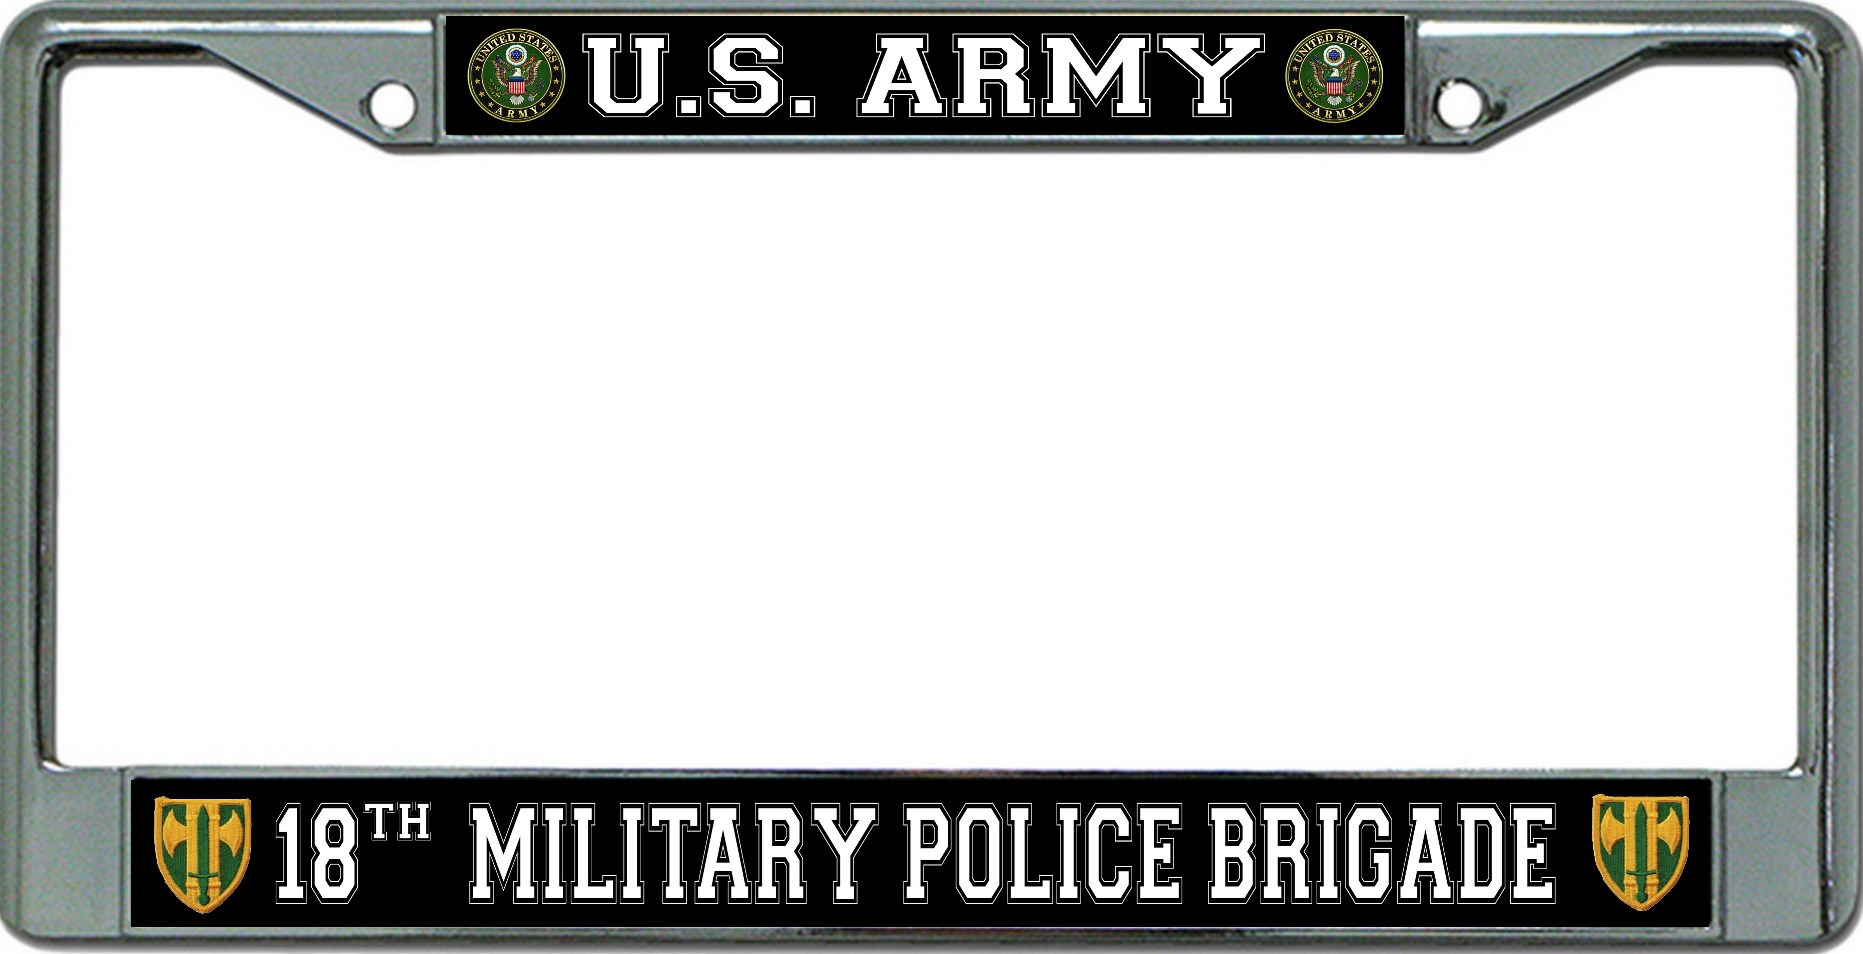 U.S. Army 18th Military Police Brigade Chrome License Plate FRAME